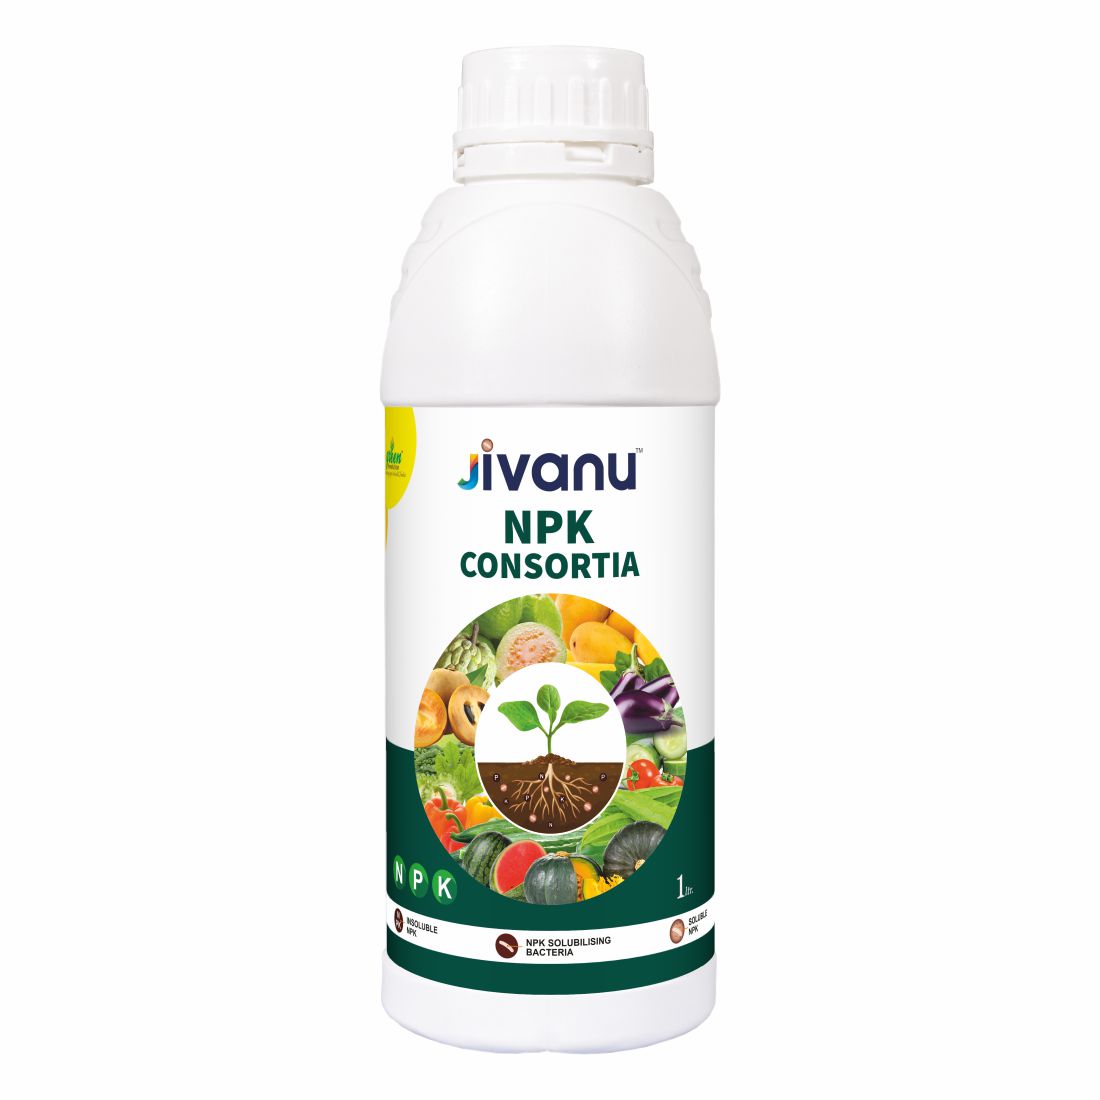 Jivanu NPK Consortia Liquid Pack of 1 (1 Litre).